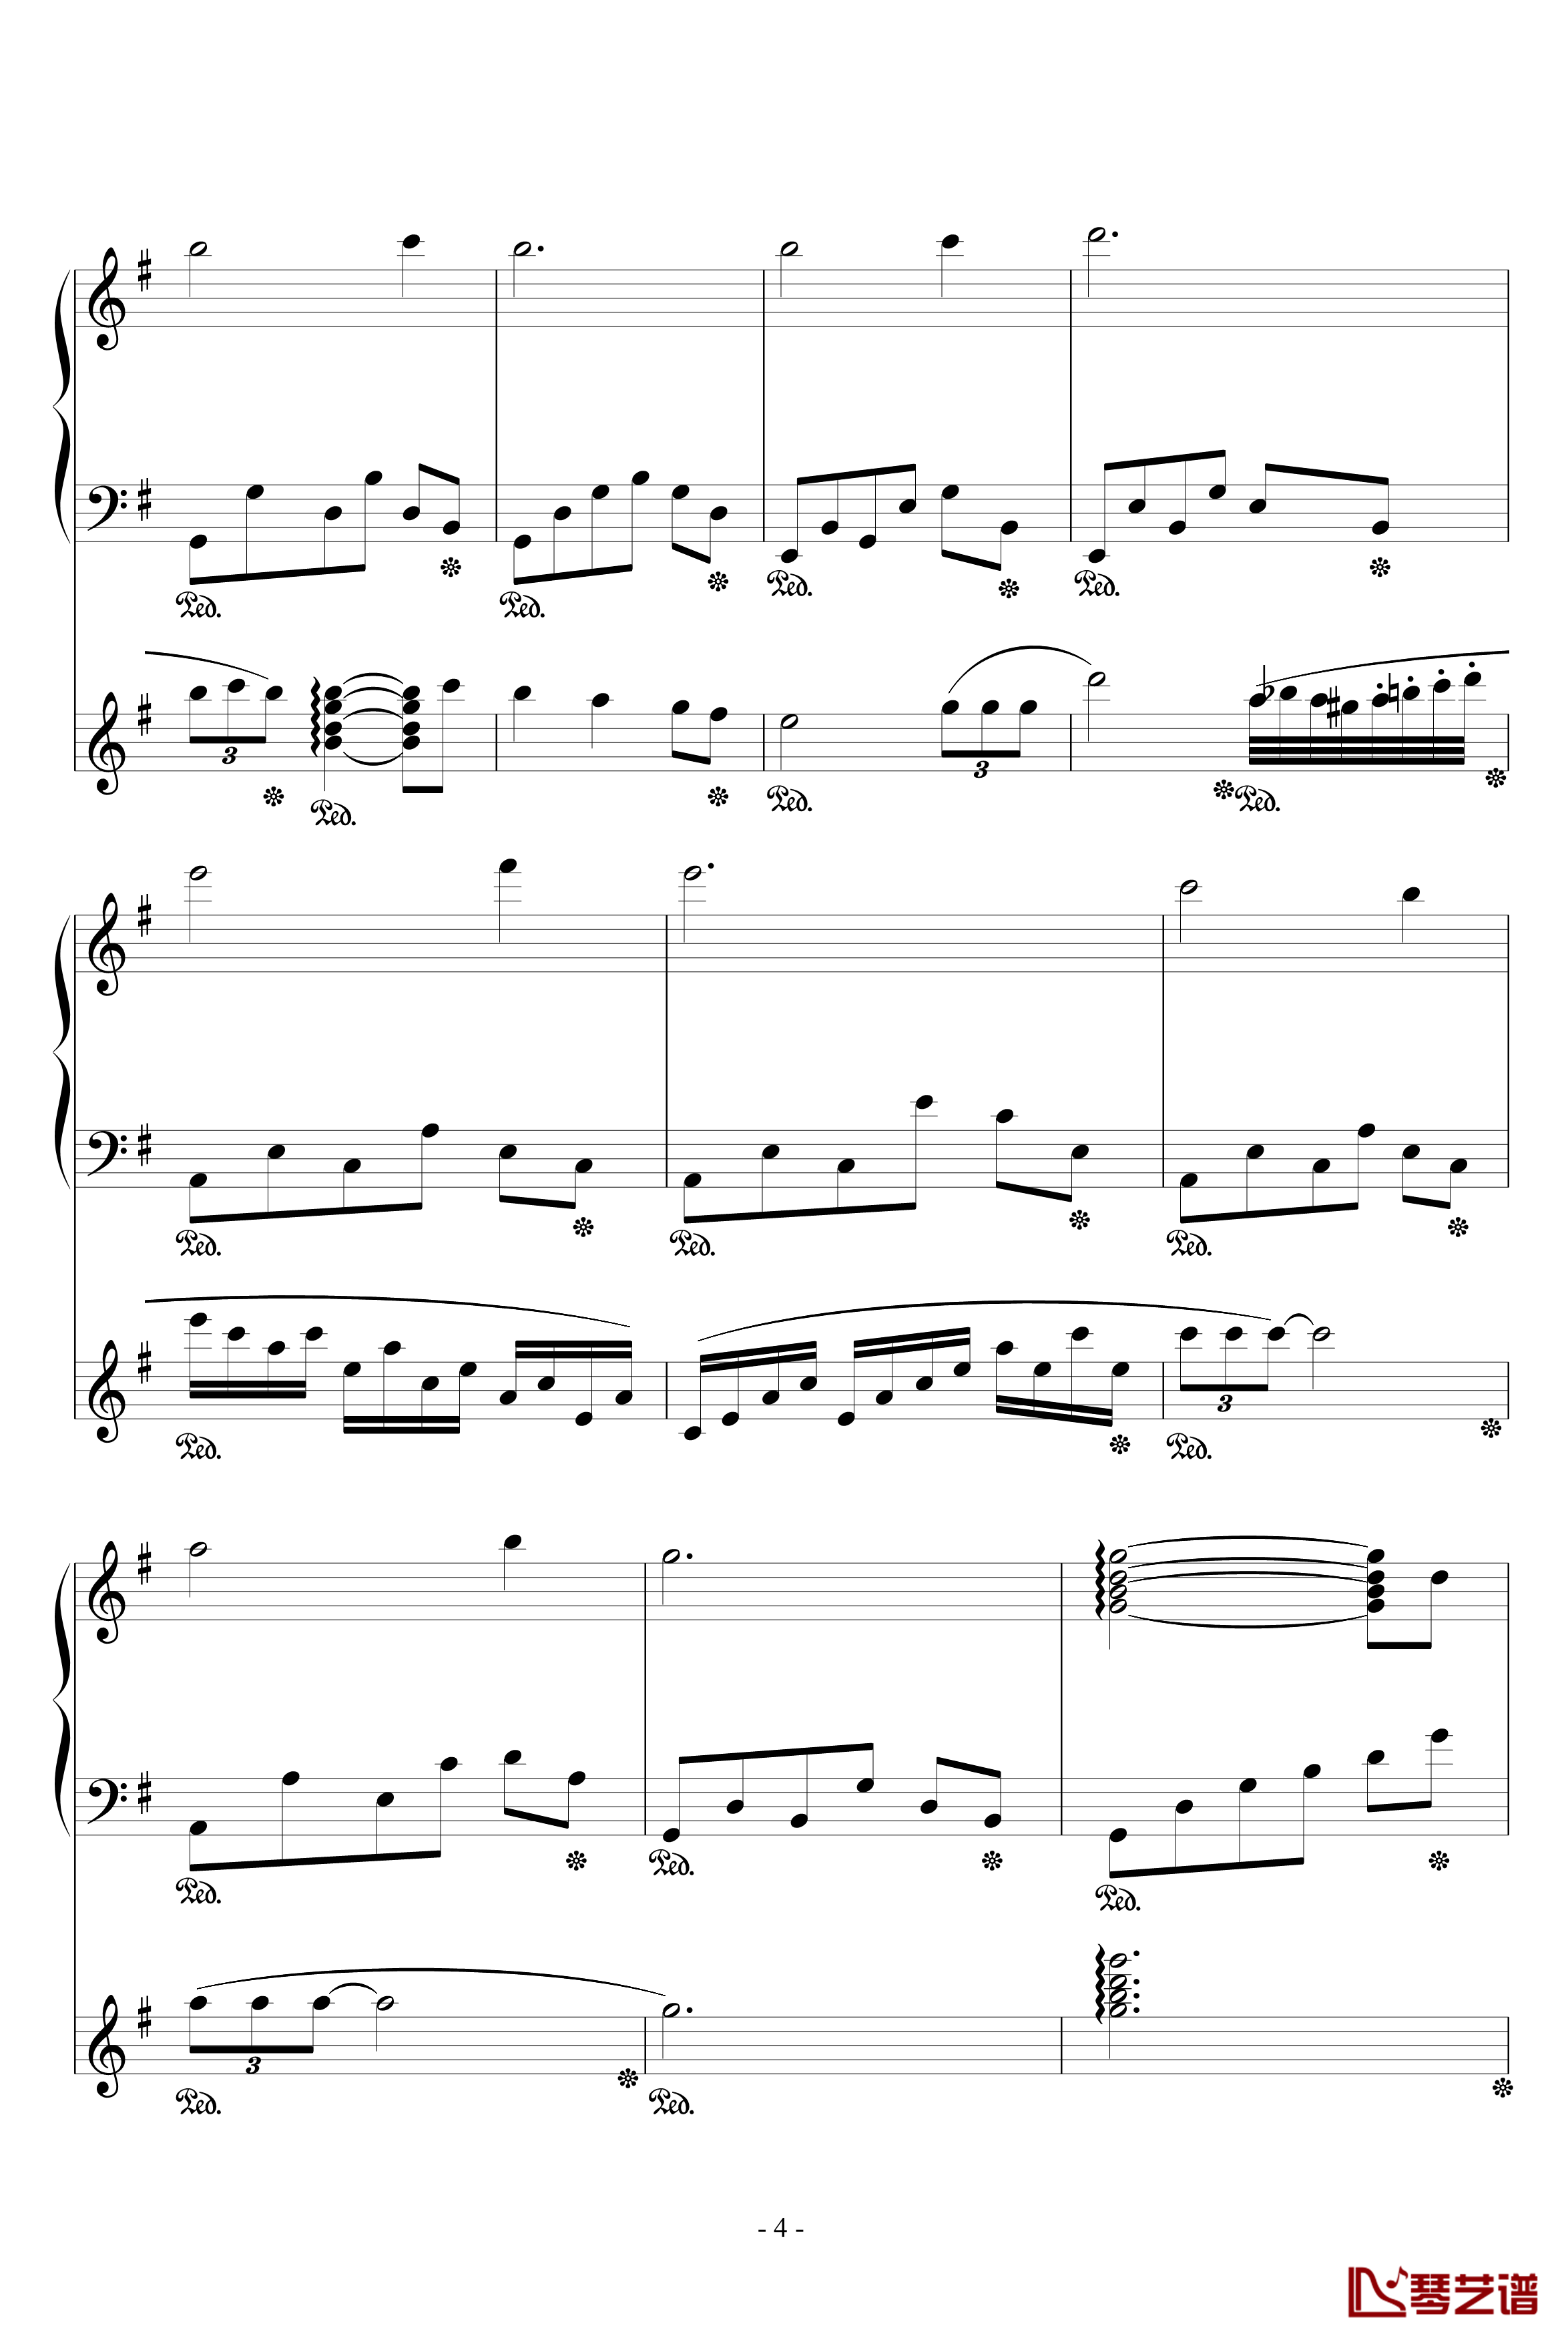 流星小幻想曲钢琴谱-修改-升c小调